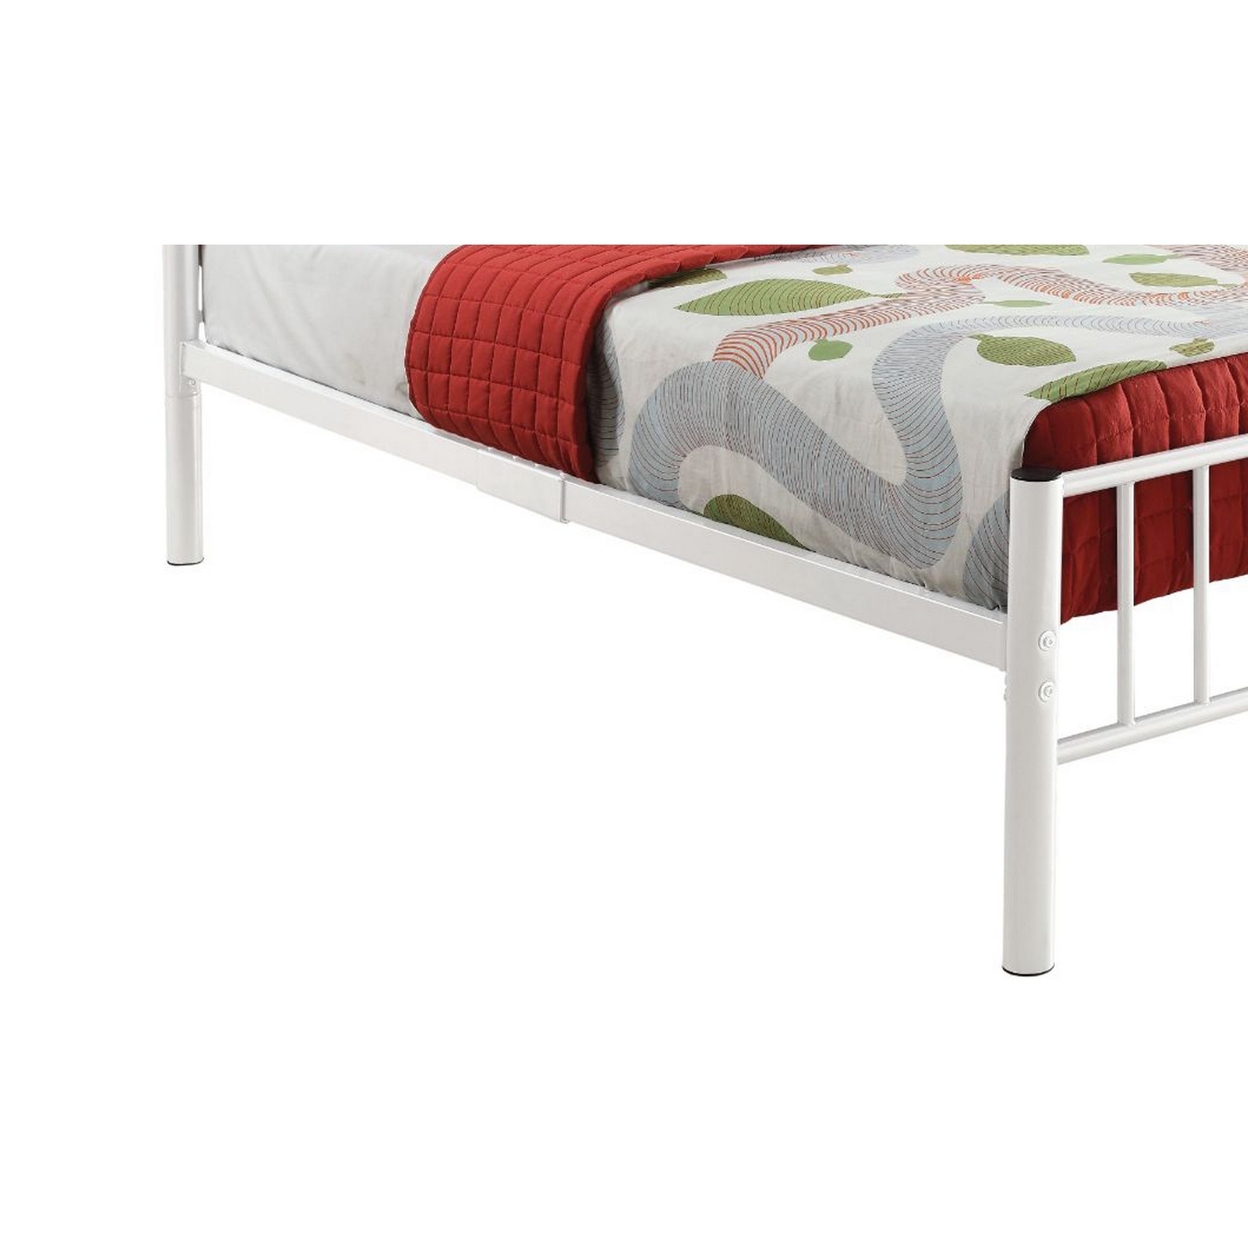 Metal Full Bed In Slatted Style, White- Saltoro Sherpi